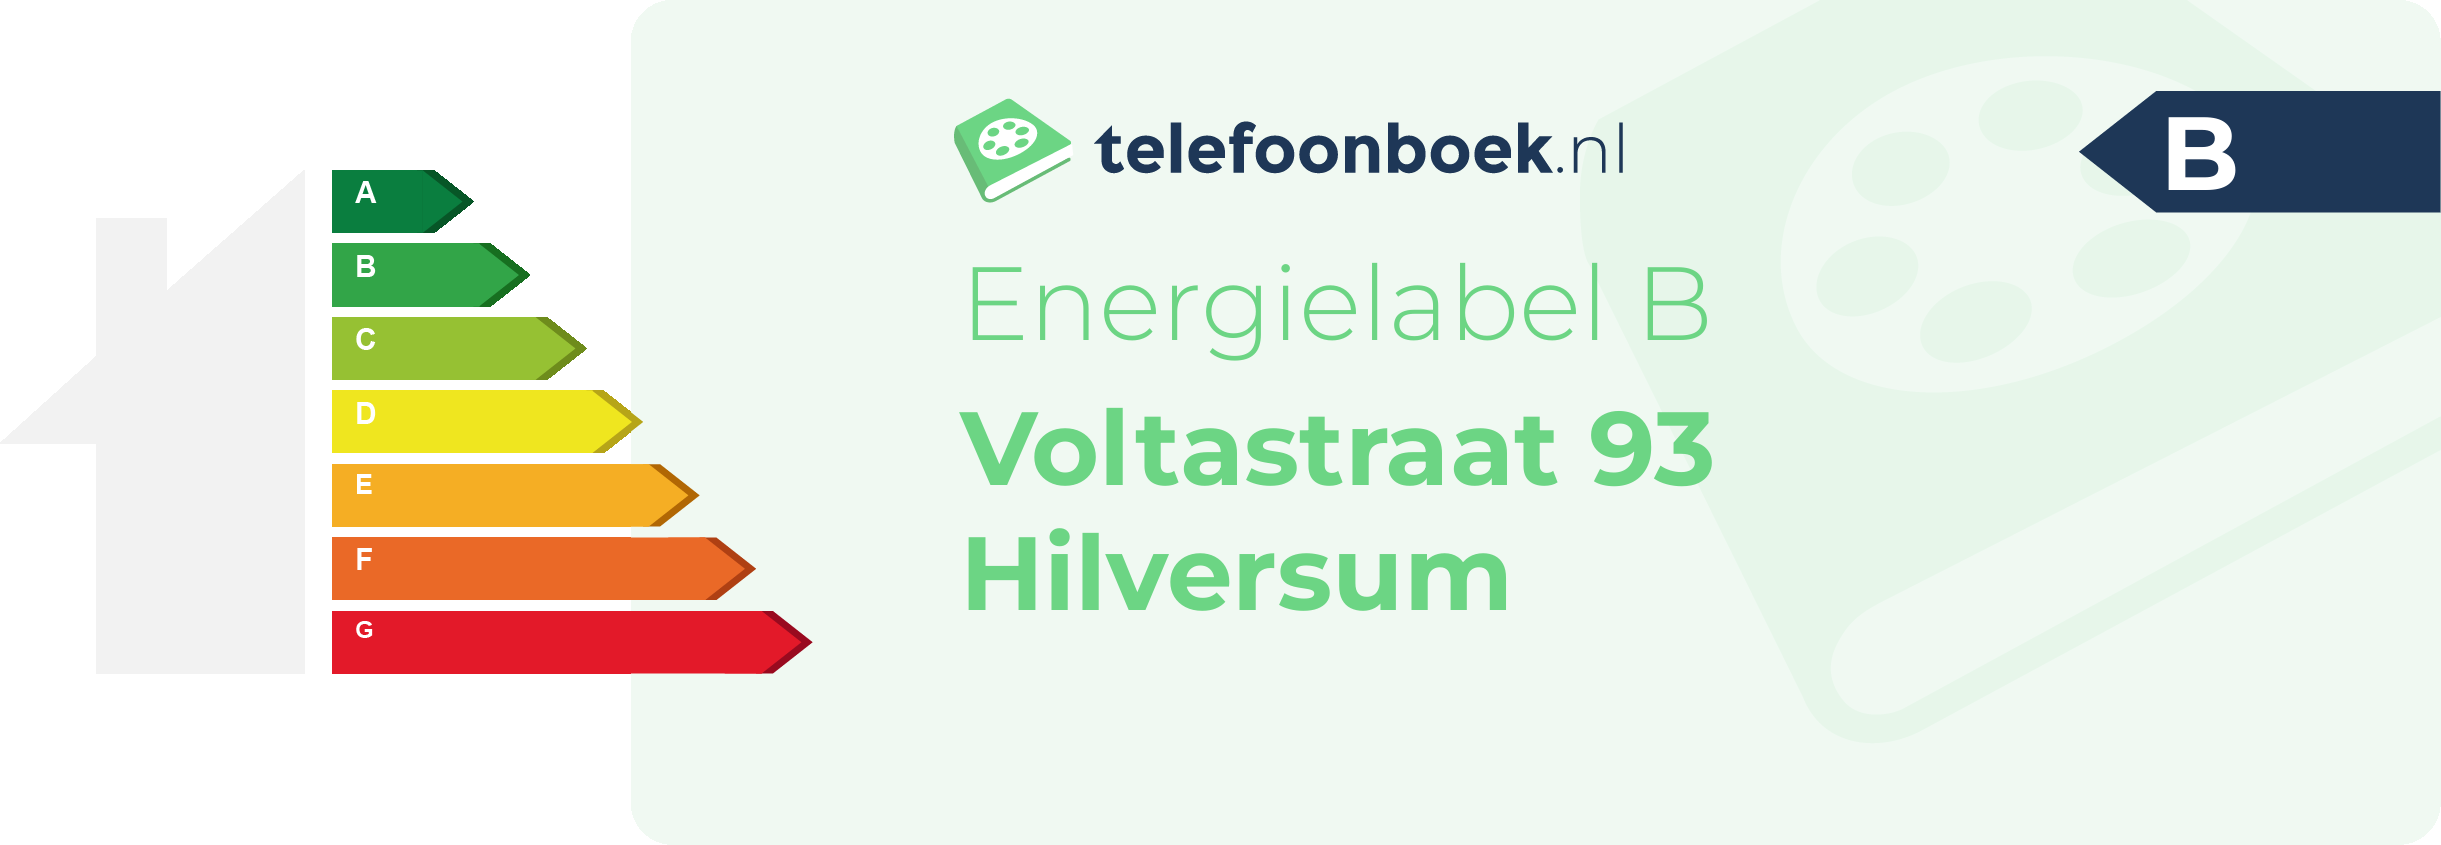 Energielabel Voltastraat 93 Hilversum